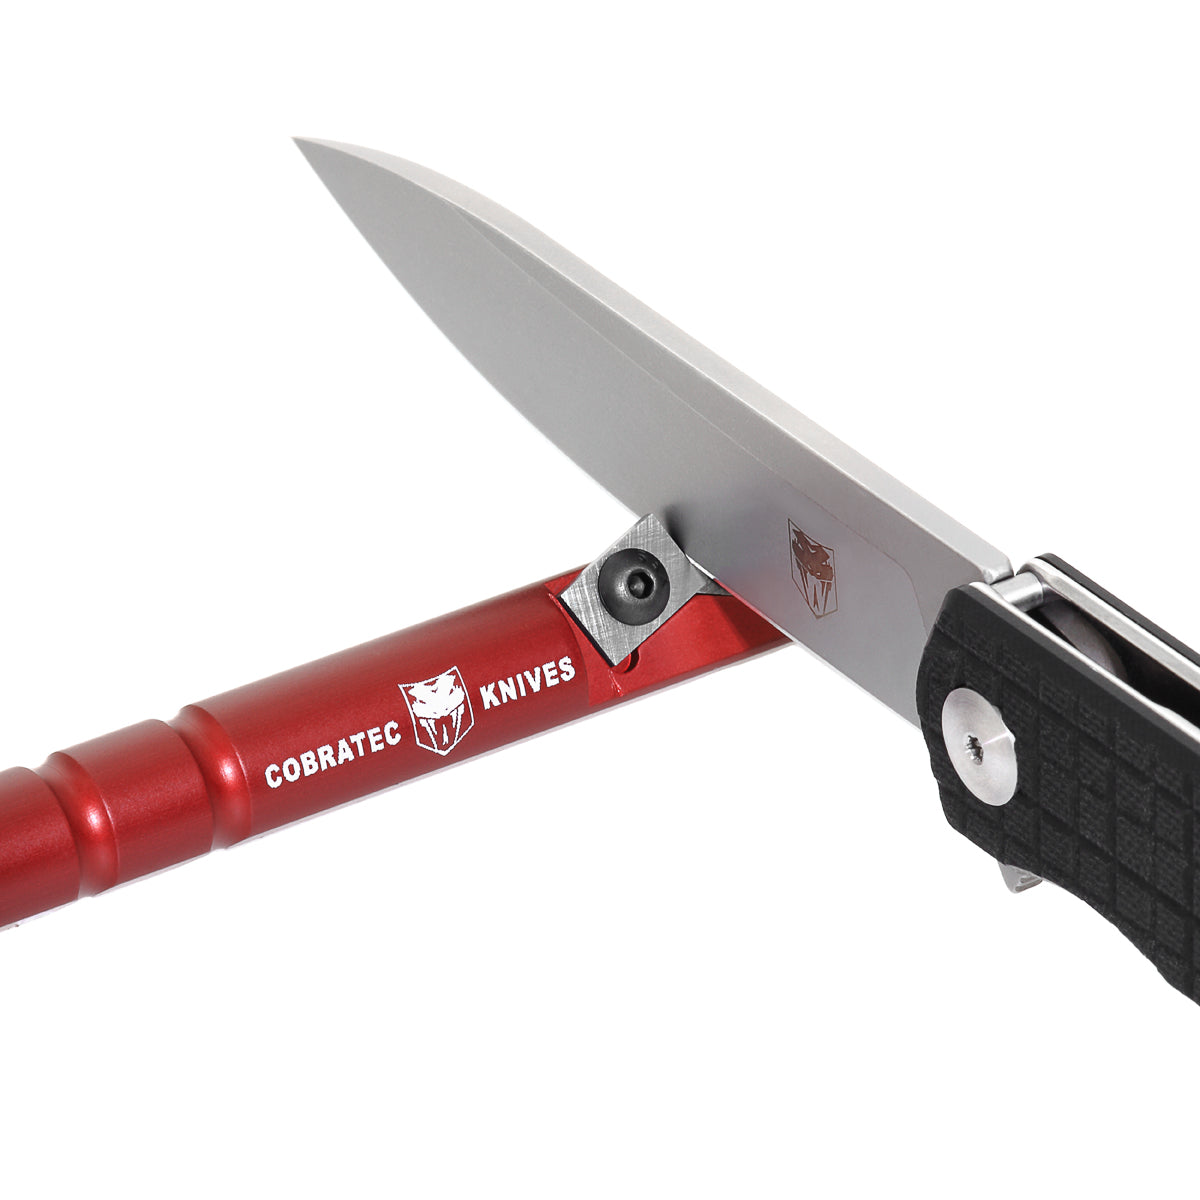 Redi-Edge Pocket Knife Sharpener, 40 Degree Angle, Double Edge